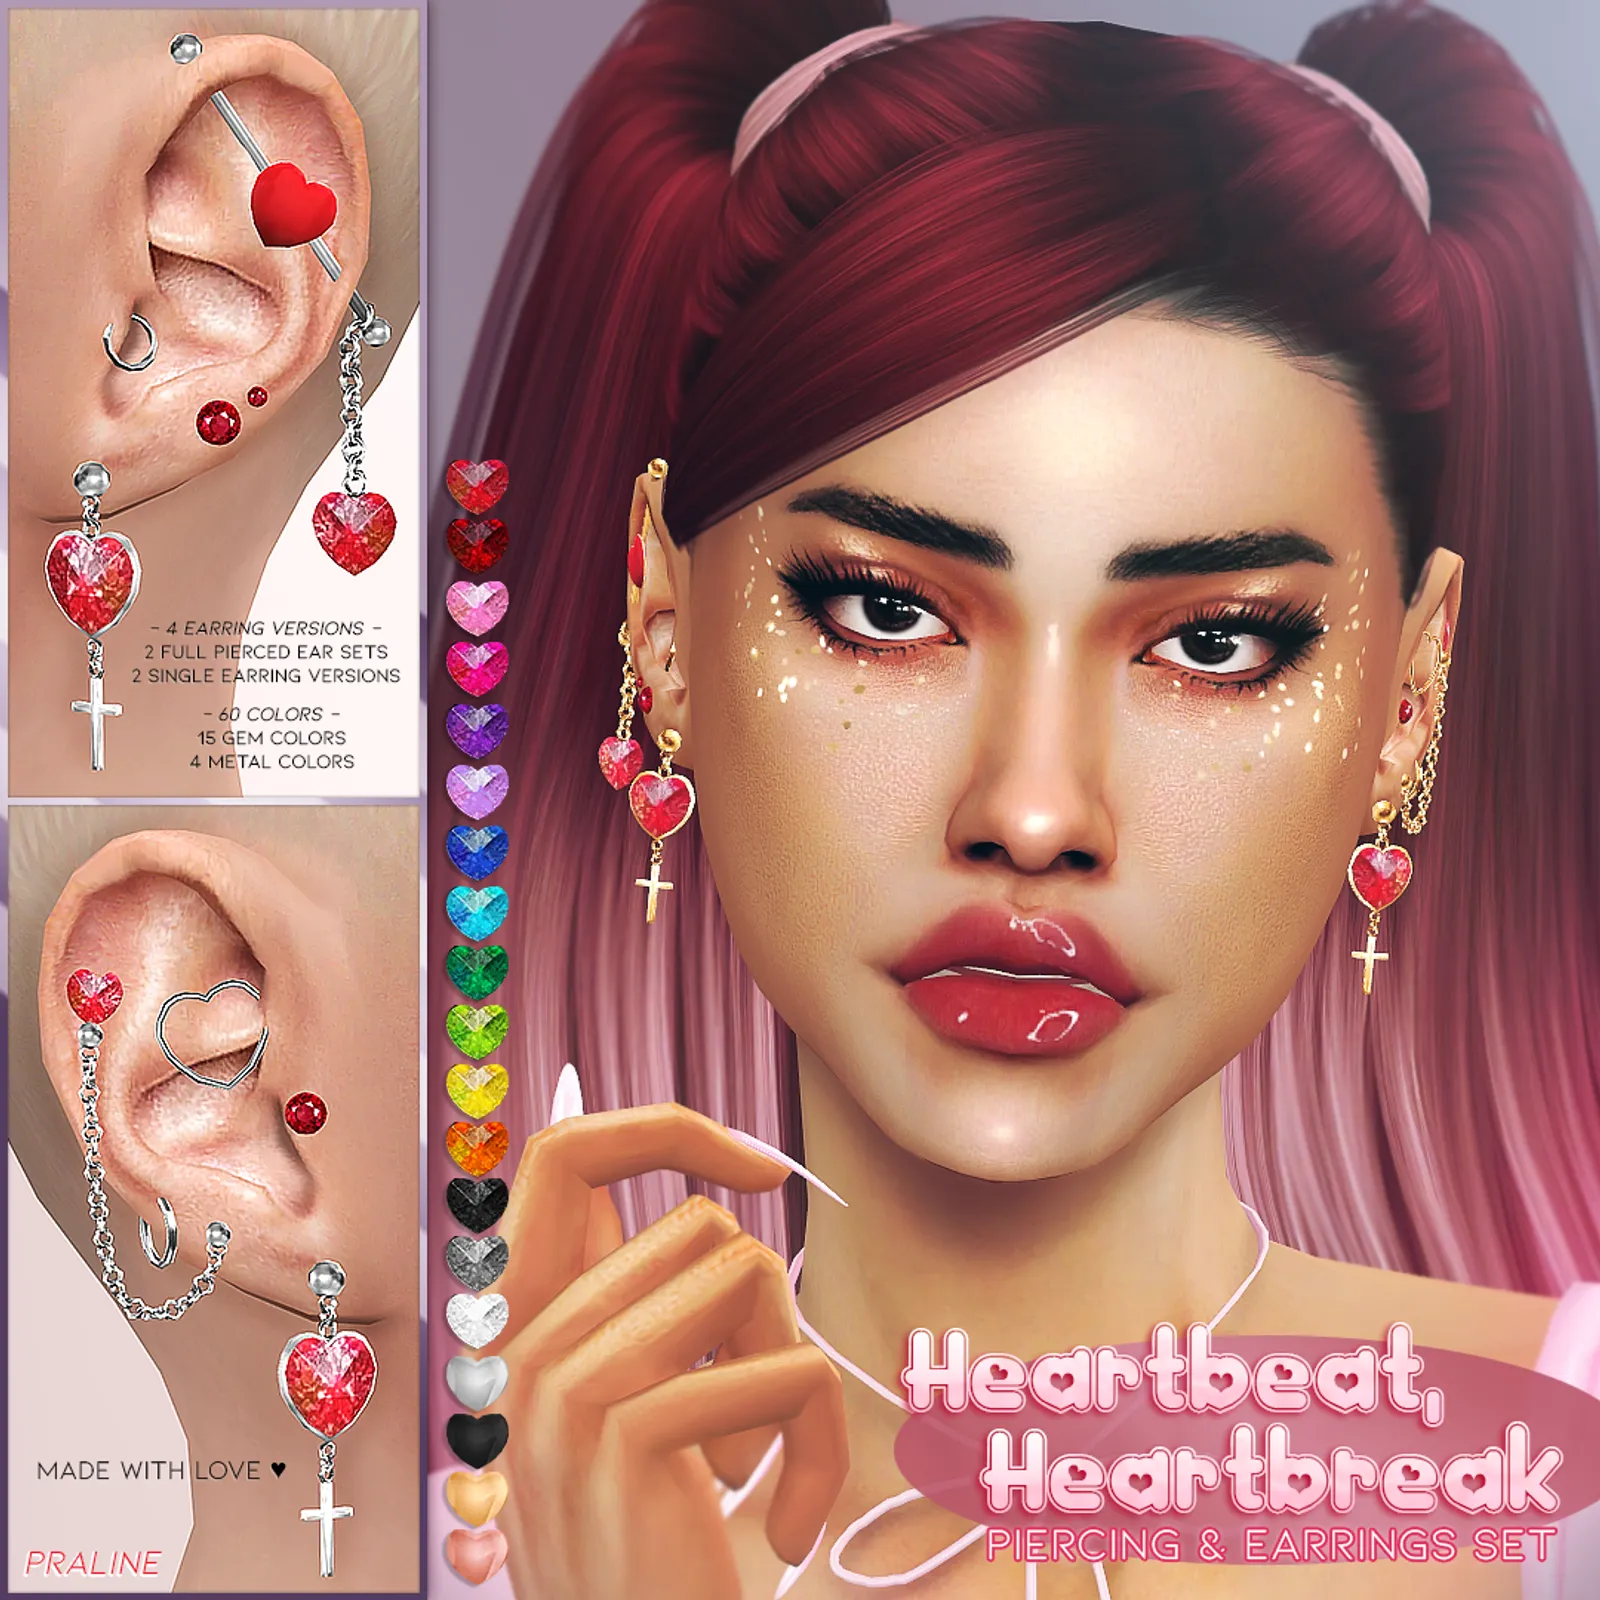 HEARTBEAT, HEARTBREAK Piercing & Earring Set